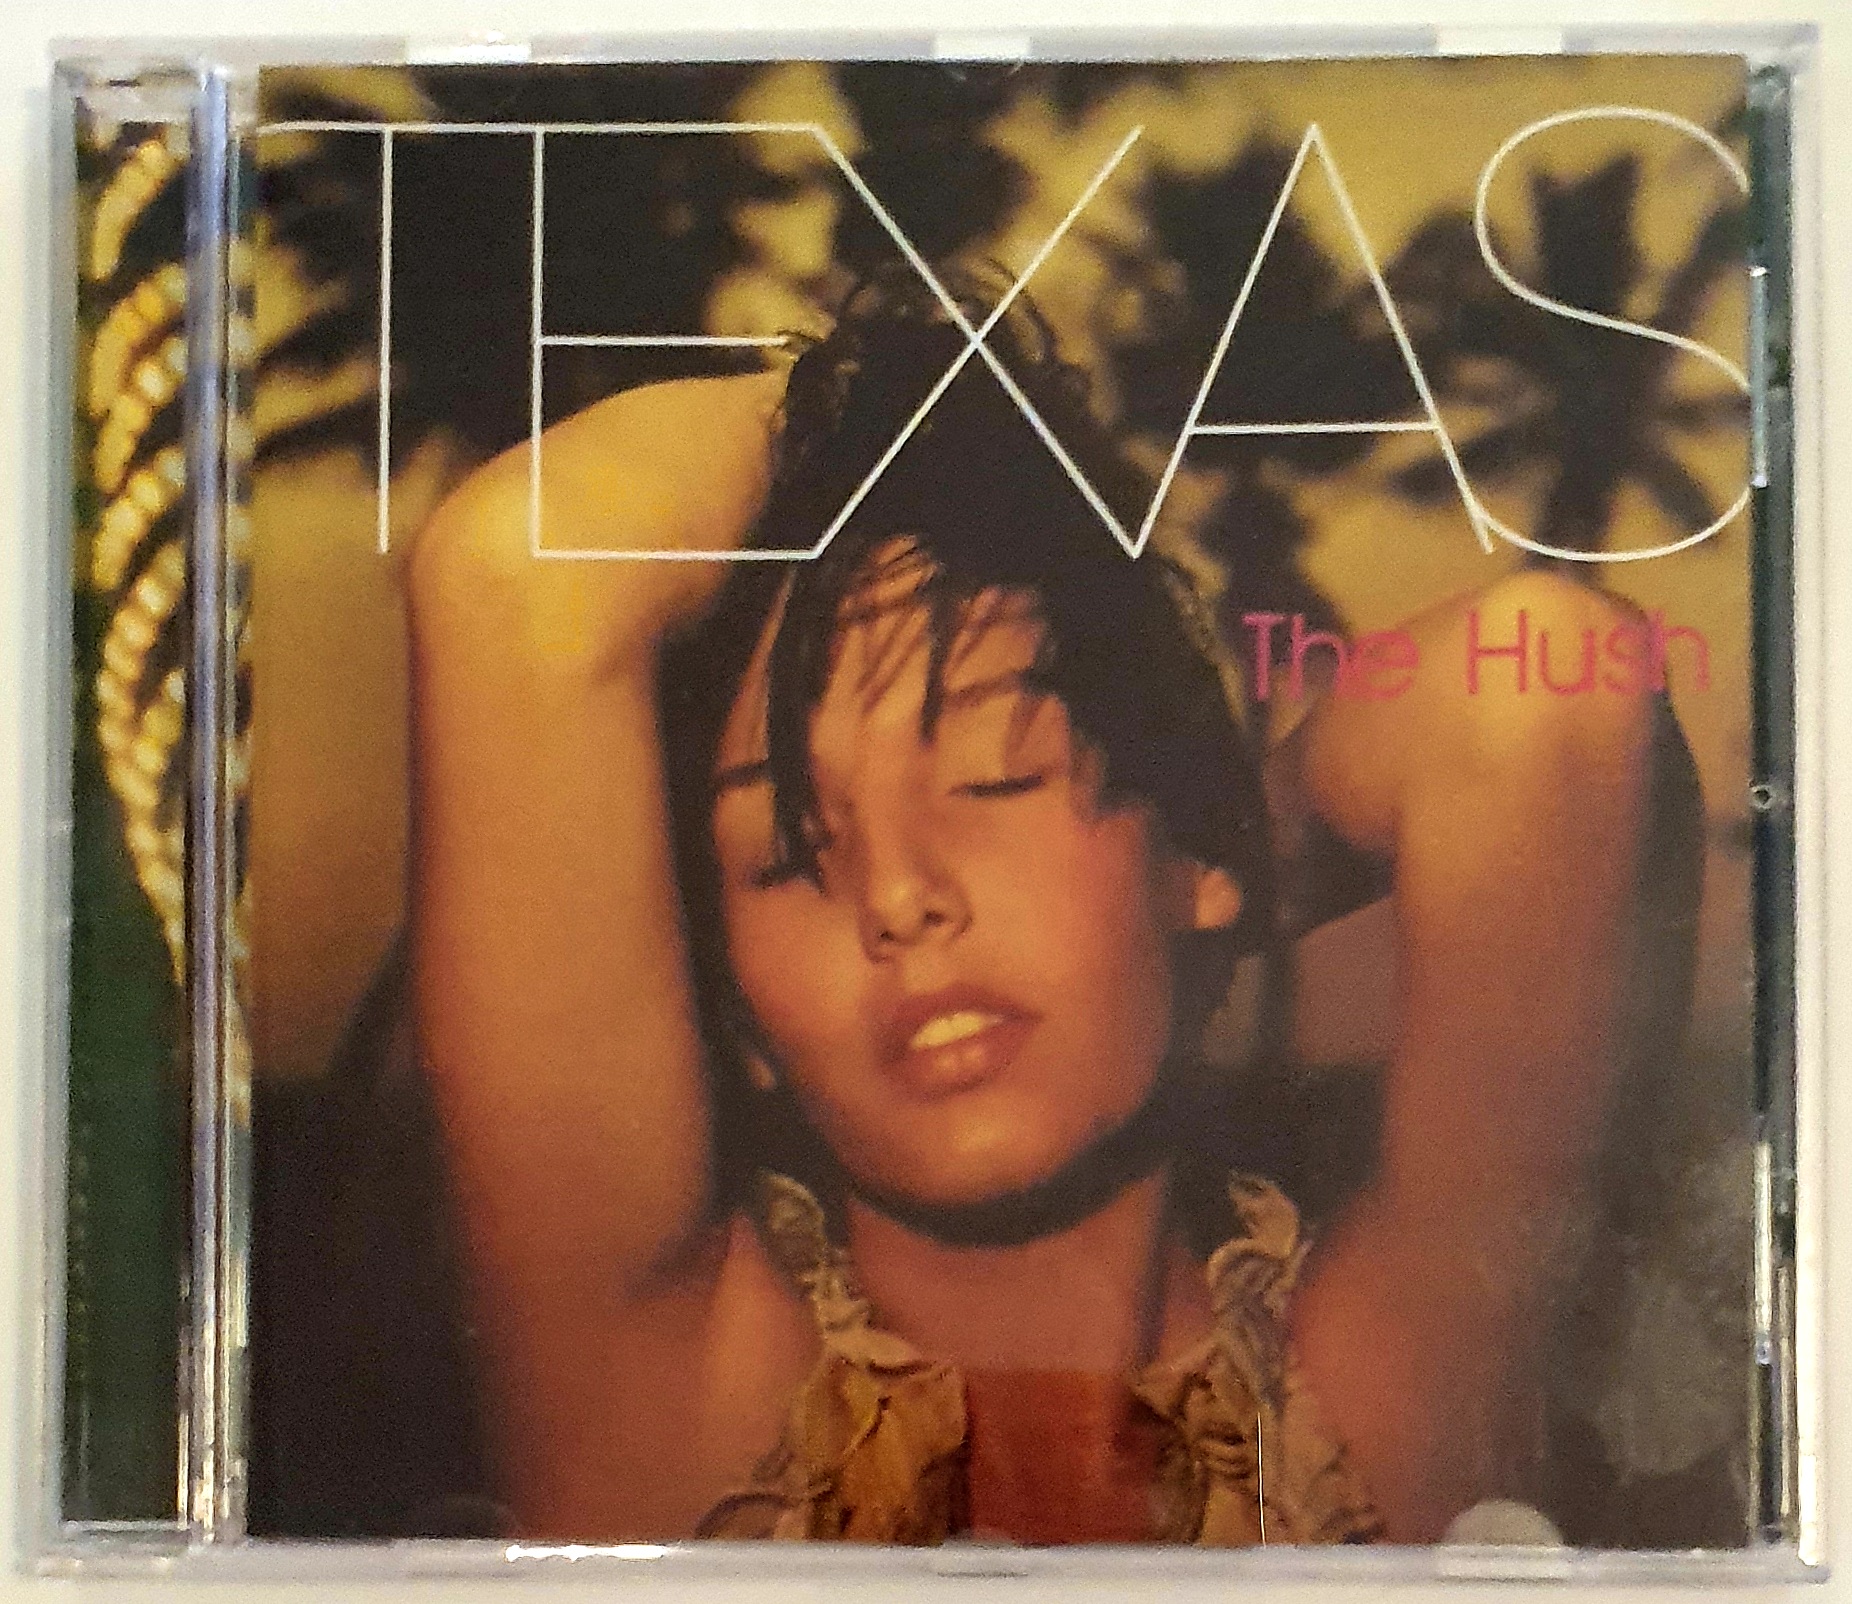 CD Texas - The Hush (1999)